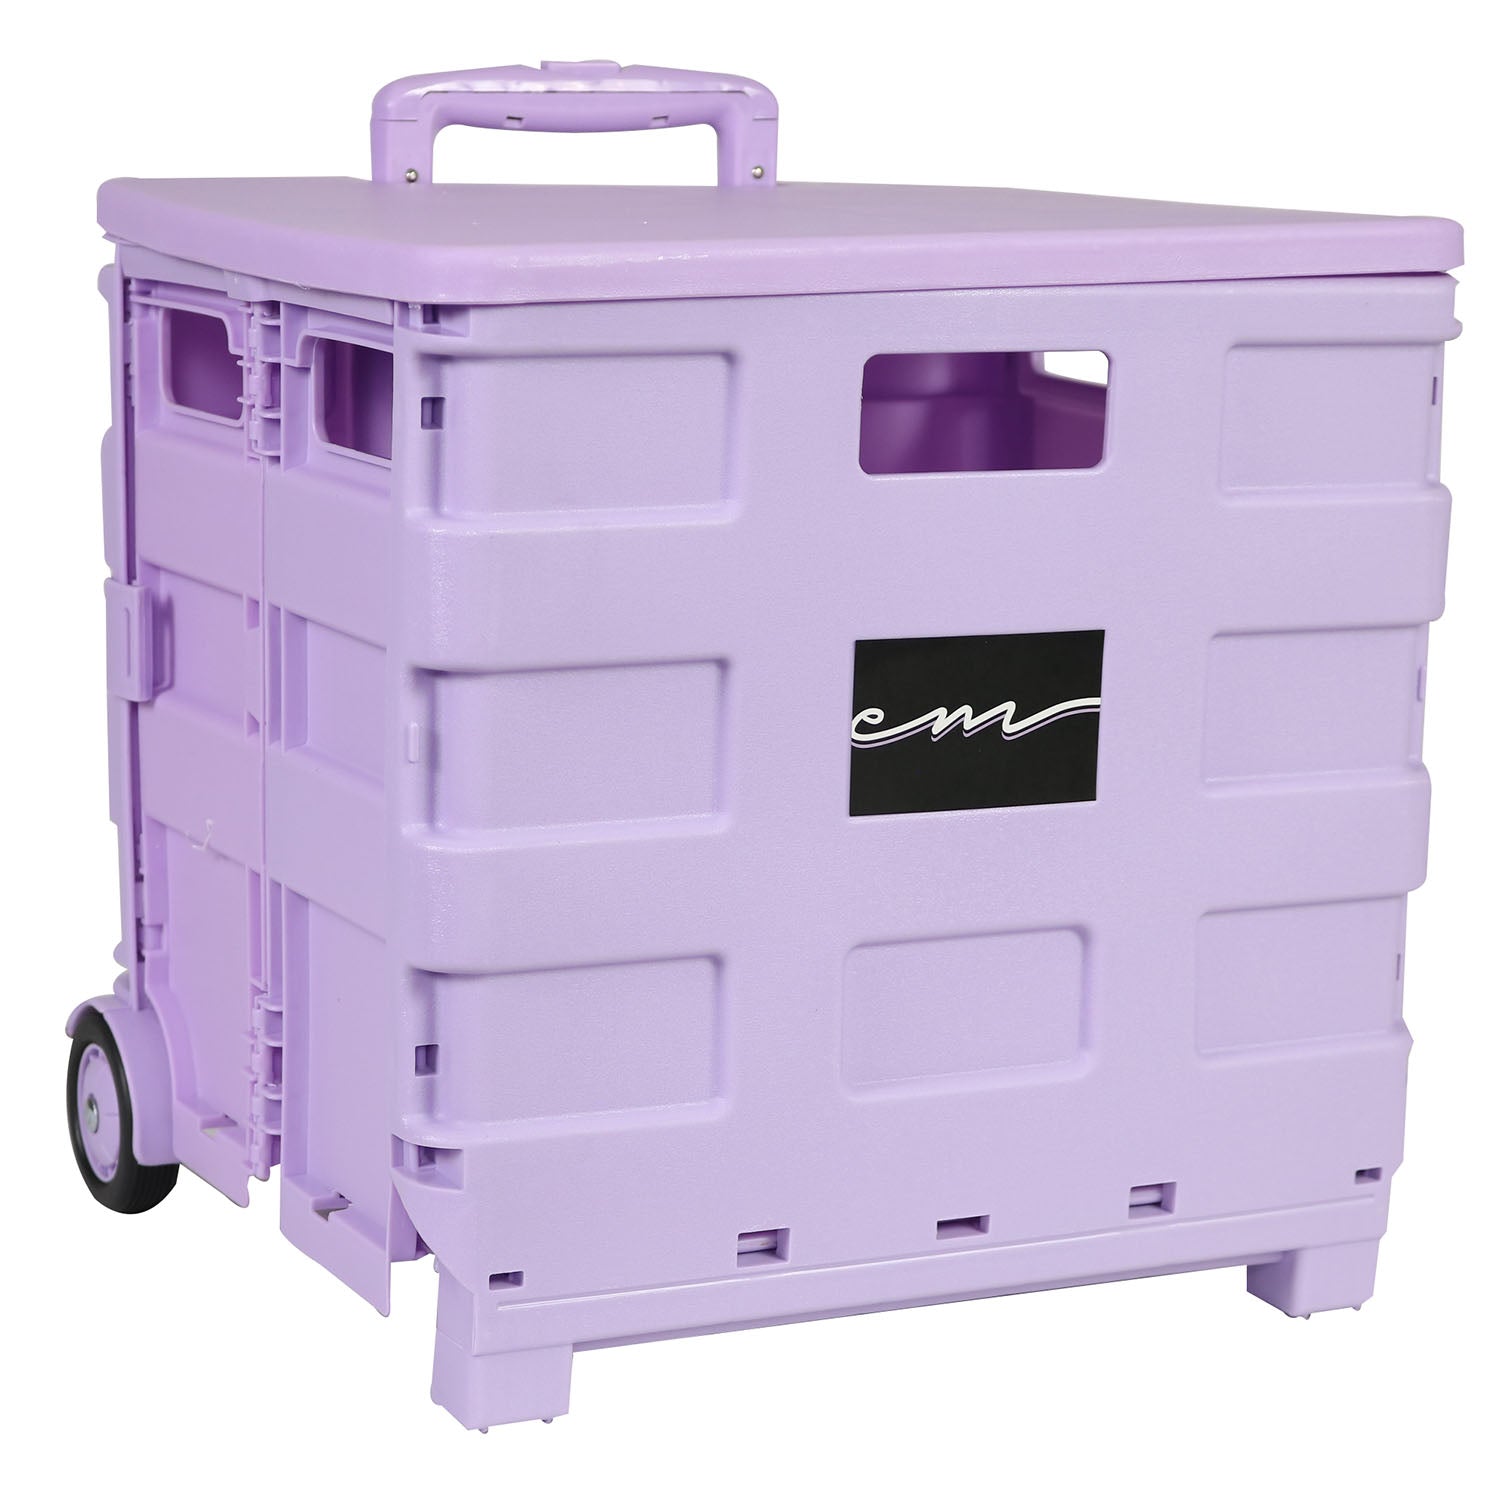 Crafts Supplies Rolling Storage Cart